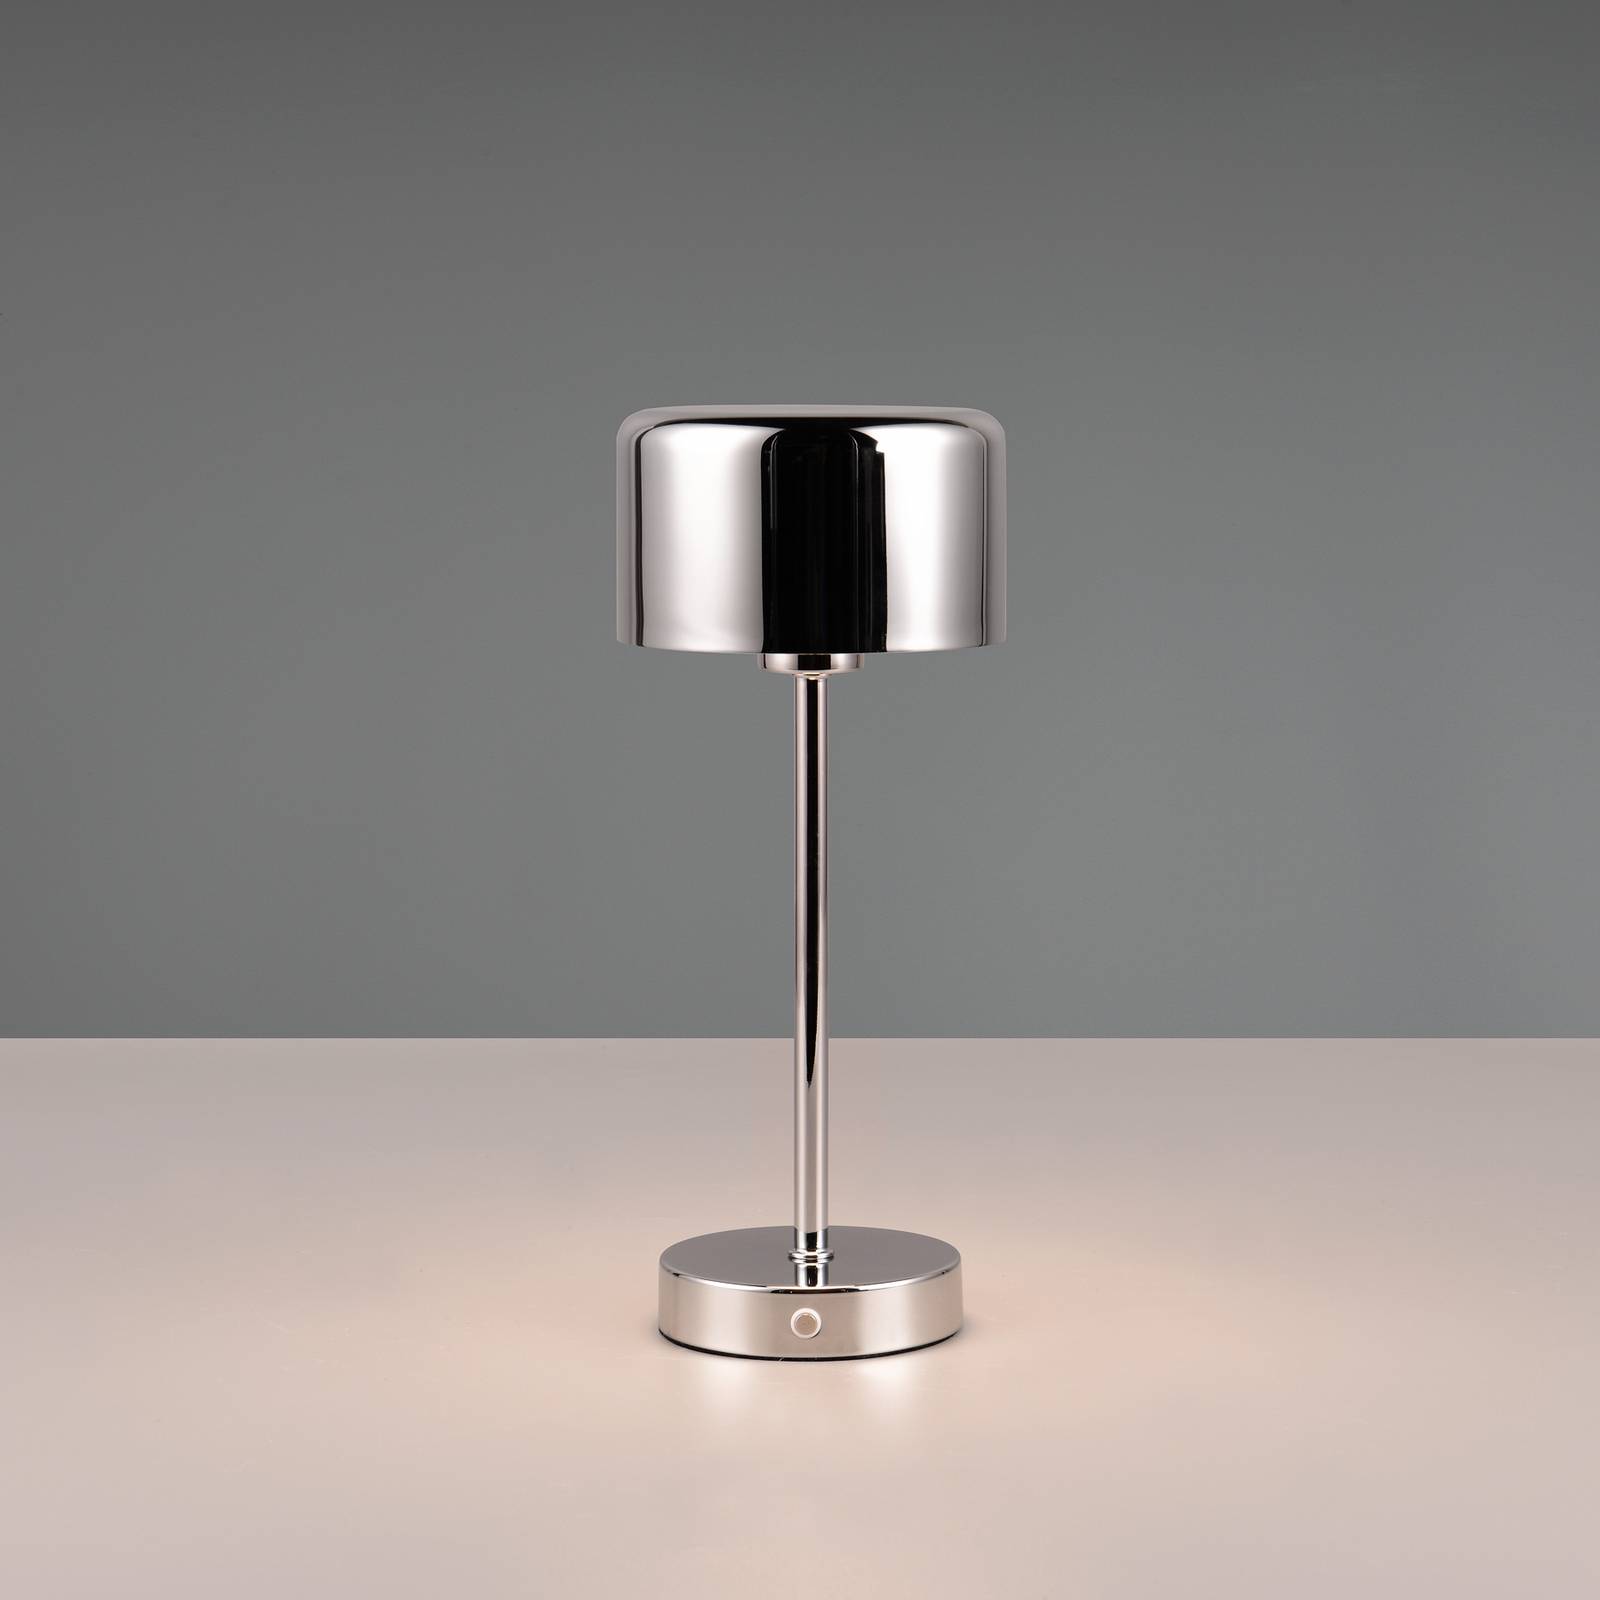 Jeff LED-es újratölthető asztali lámpa, króm színű, magasság 30 cm, fém